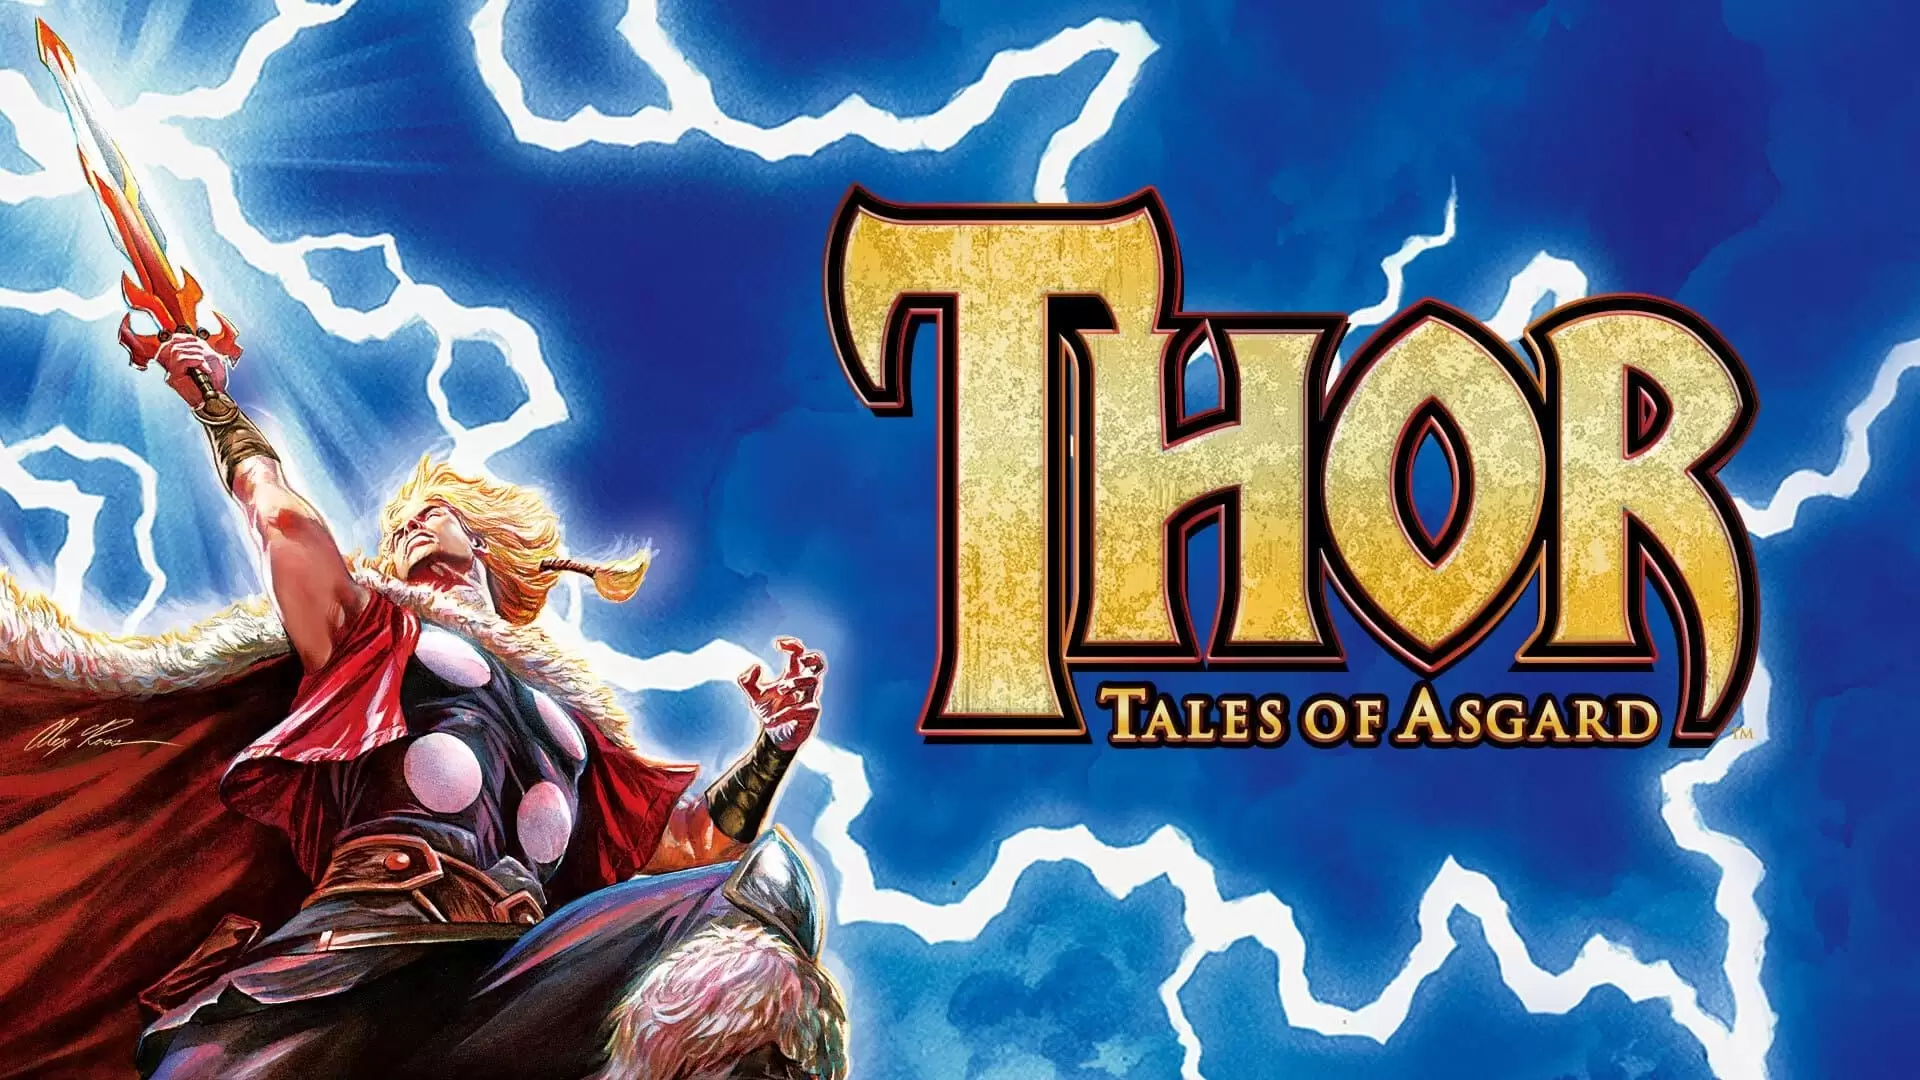 دانلود انیمیشن Thor: Tales of Asgard 2011 با زیرنویس فارسی